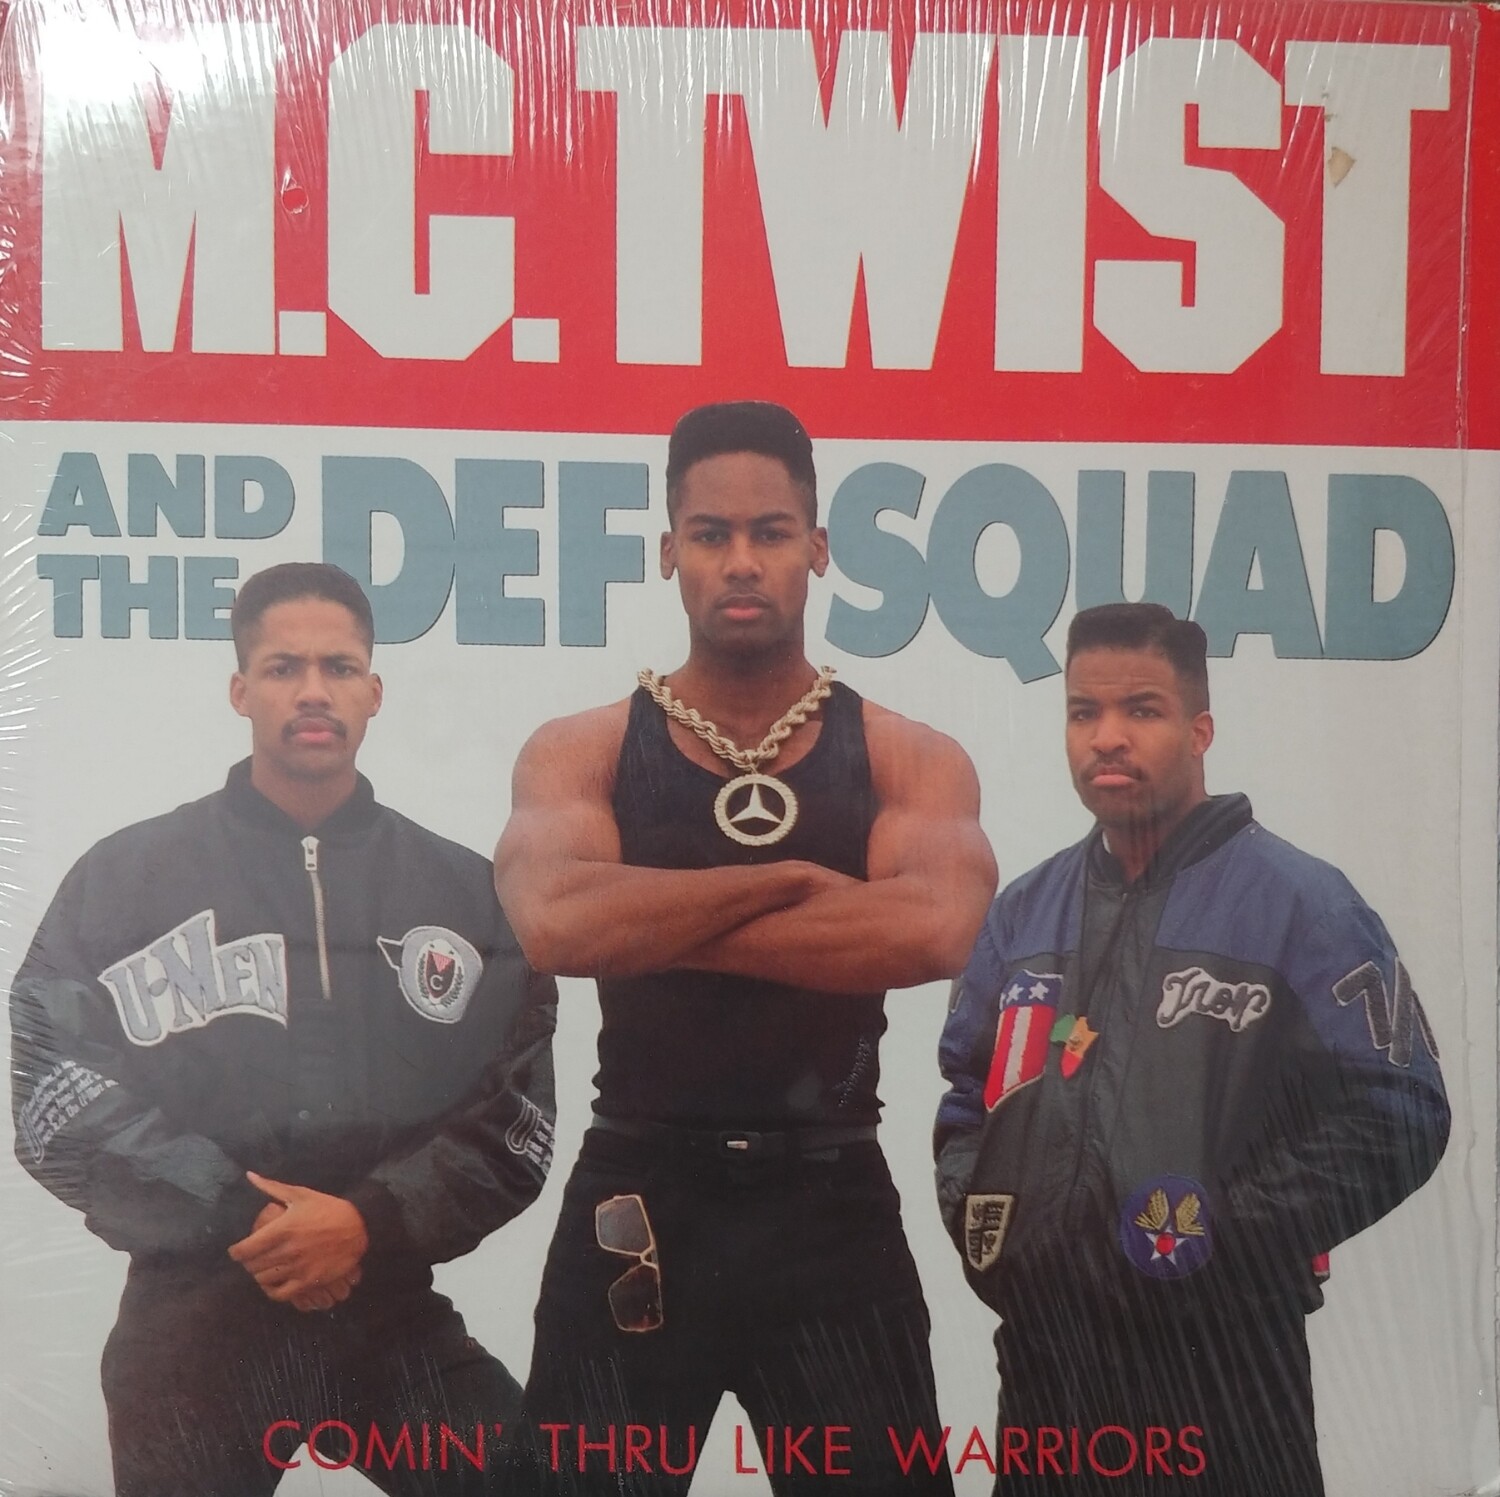 M.C. Twist & The Def Squad - Comin thru like warriors